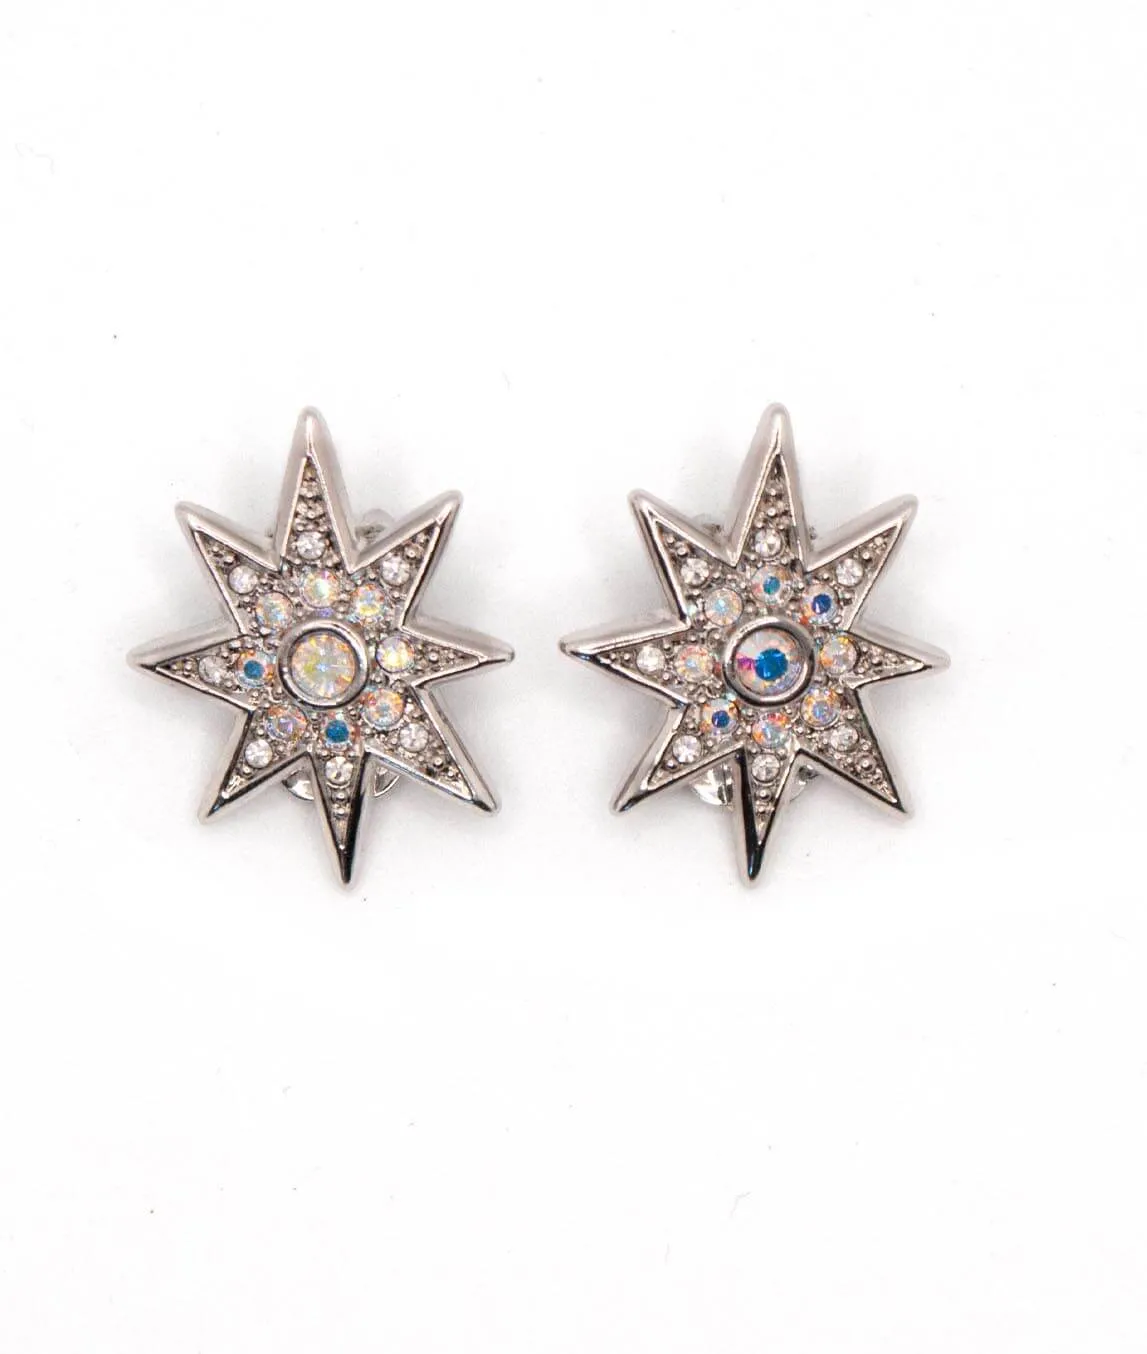 Christian Dior starburst earrings